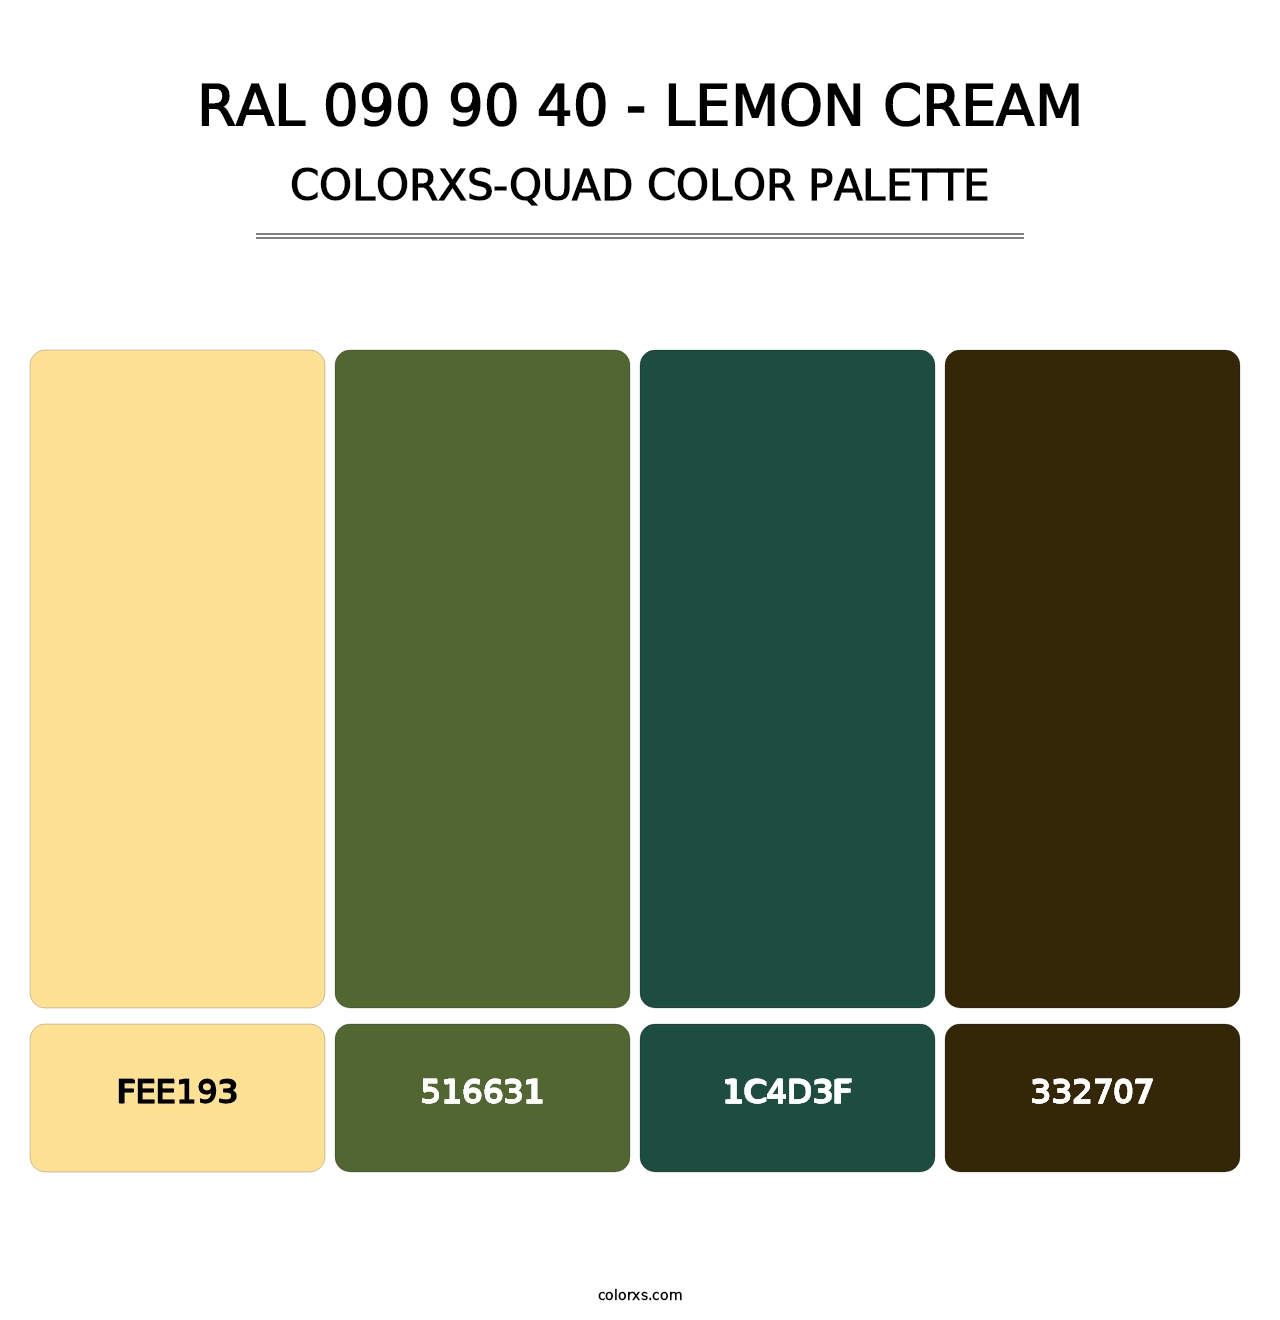 RAL 090 90 40 - Lemon Cream - Colorxs Quad Palette